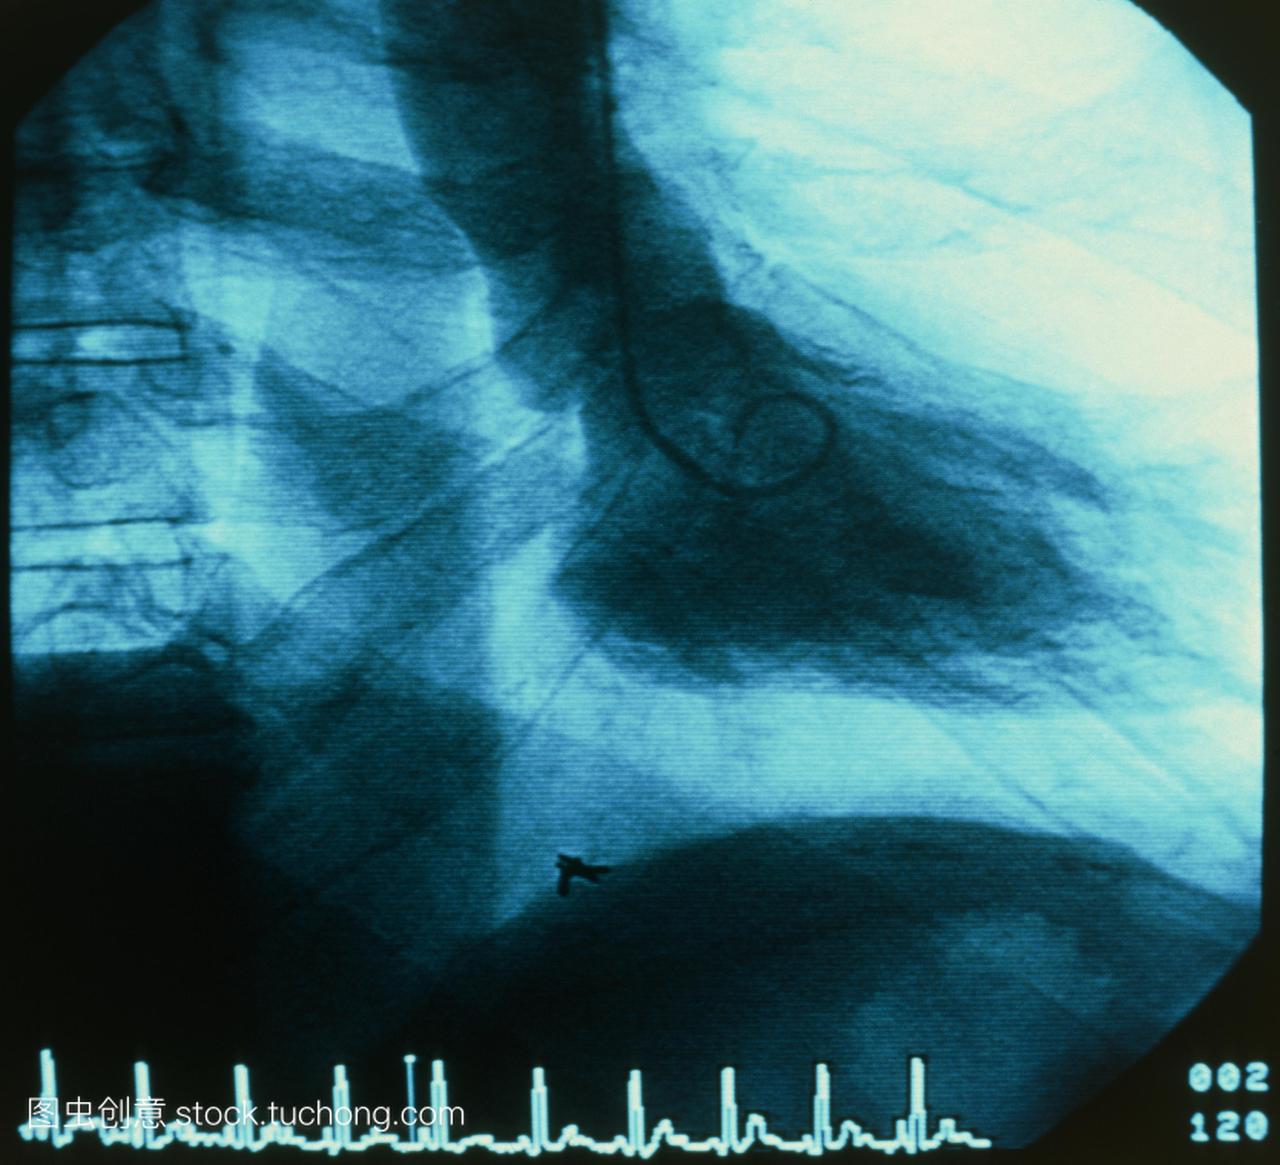 在接受心脏导管检查时,患者胸部的x光图像。导